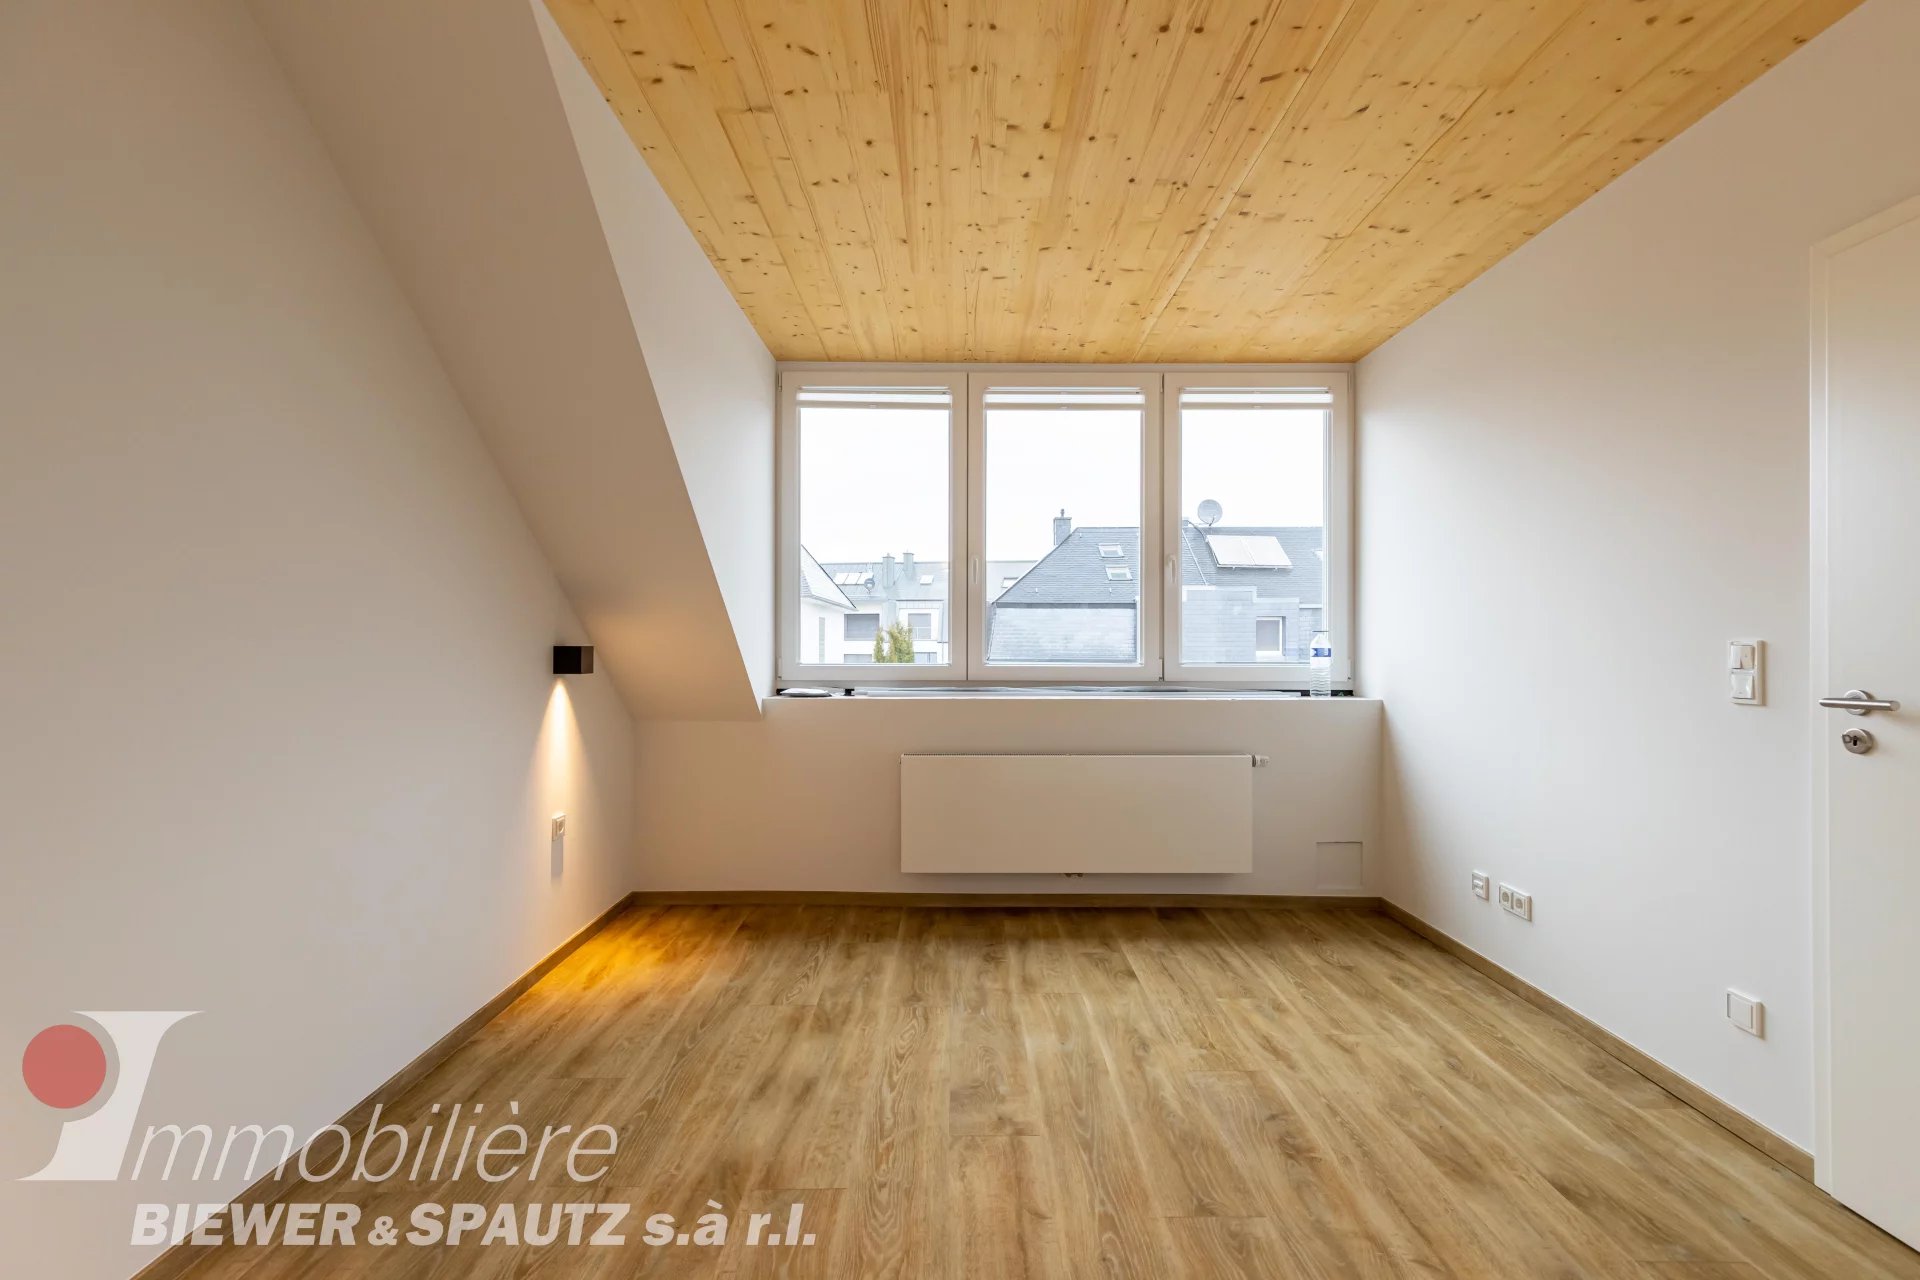 LOUÉ - appartement meublé avec 1 chambre à coucher à Luxembourg-Belair